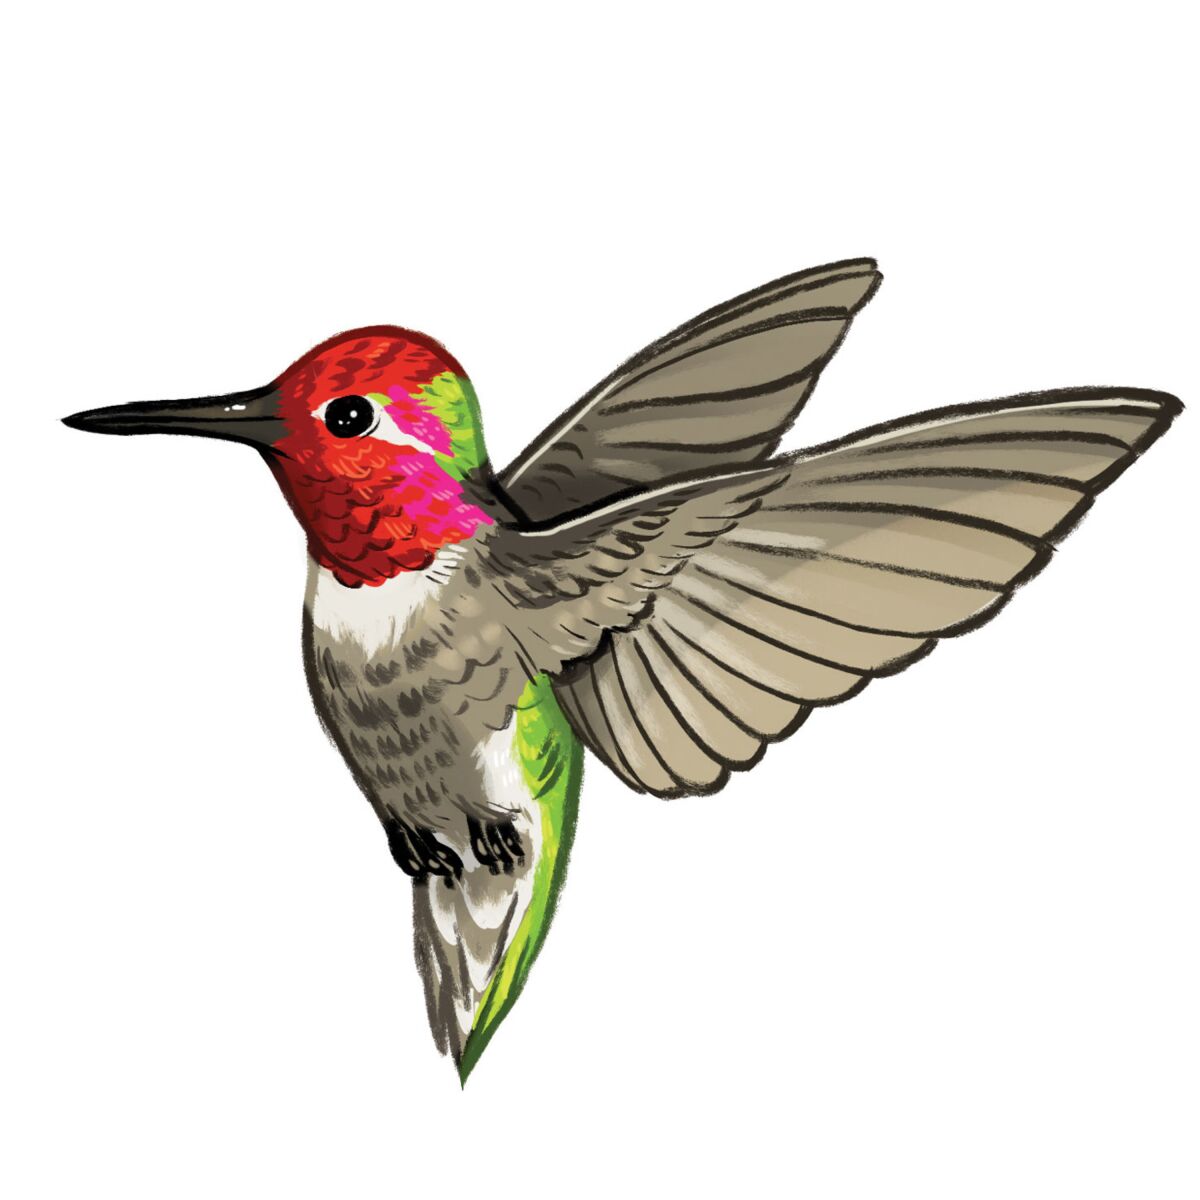 Illustration of a red faced hummingbird